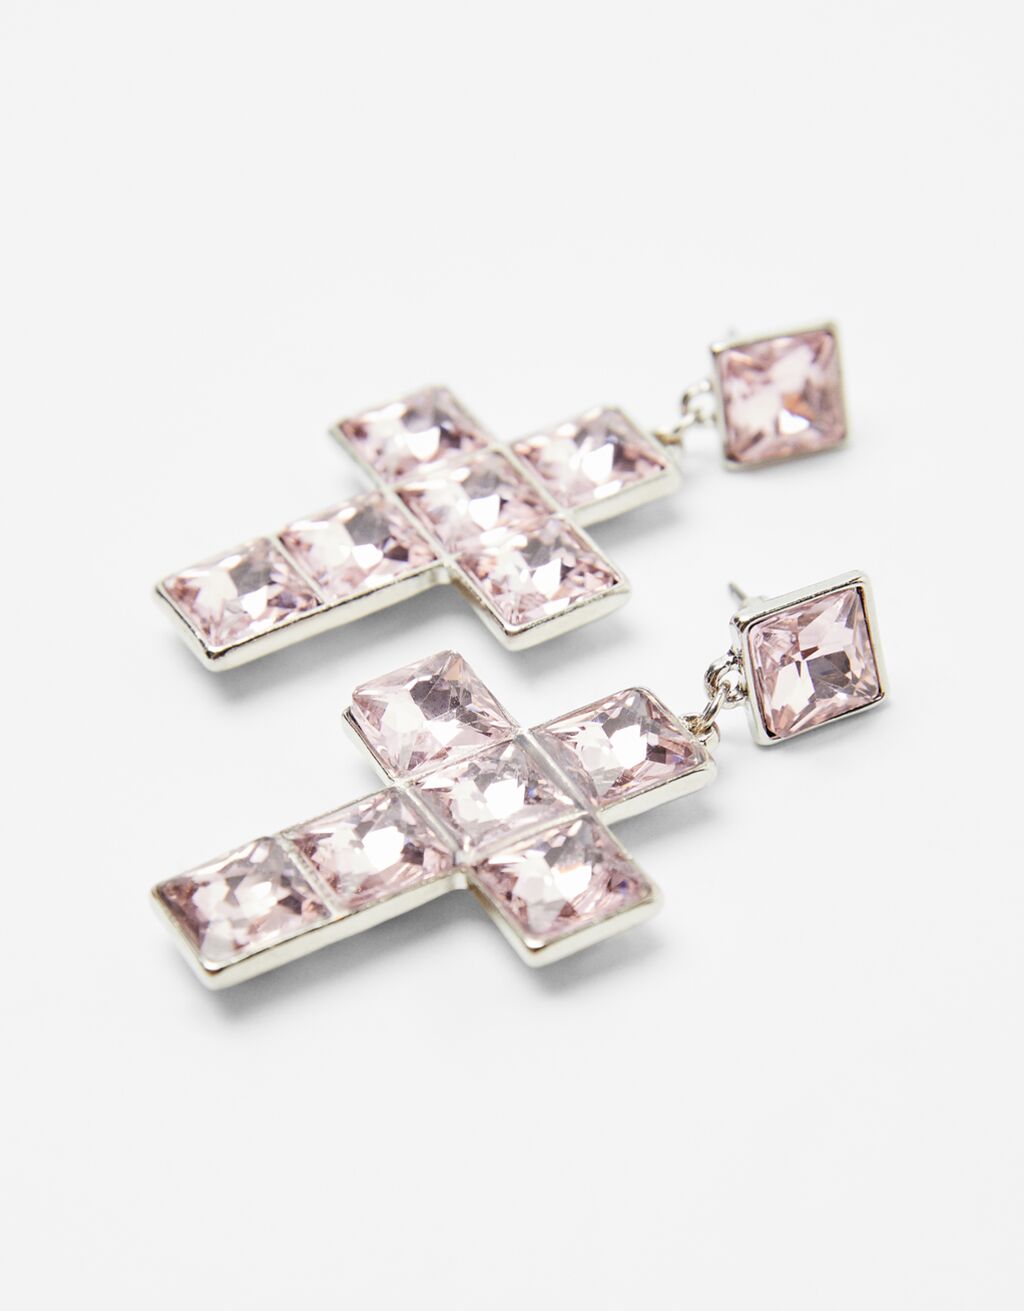 Bejeweled cross earrings